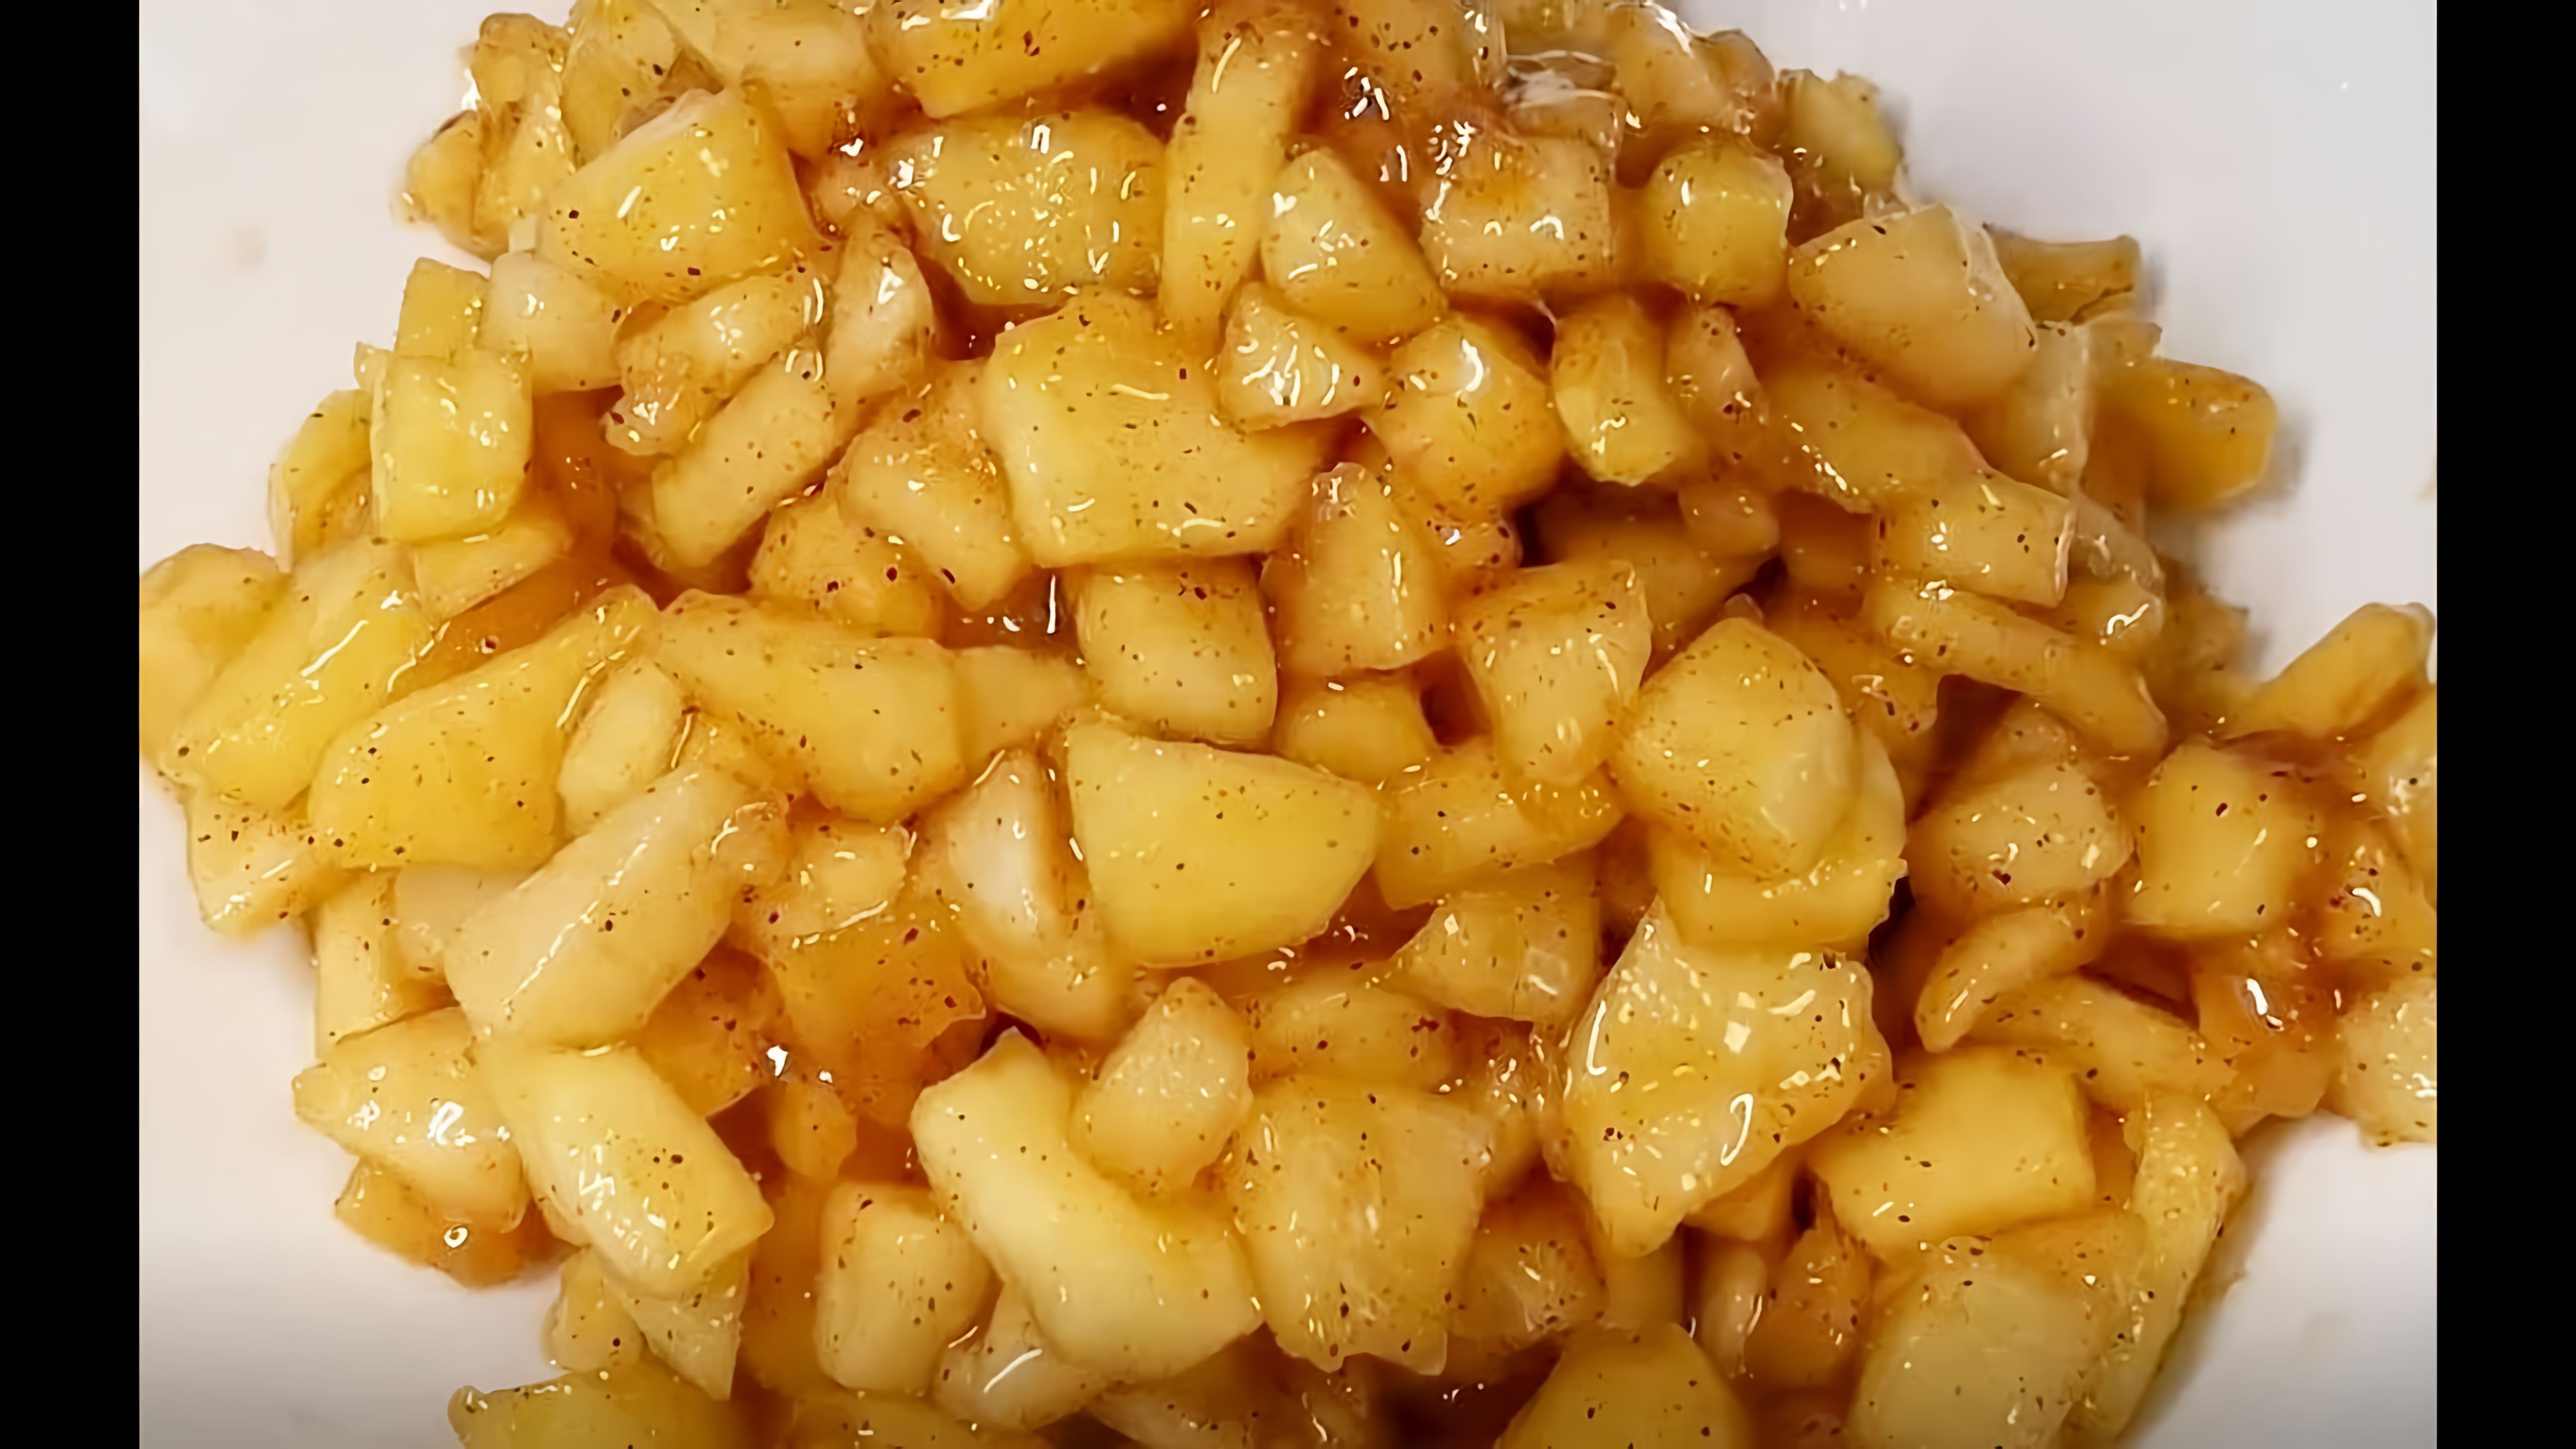 В этом видео демонстрируется процесс приготовления яблочной начинки для пирогов, тартов и булочек